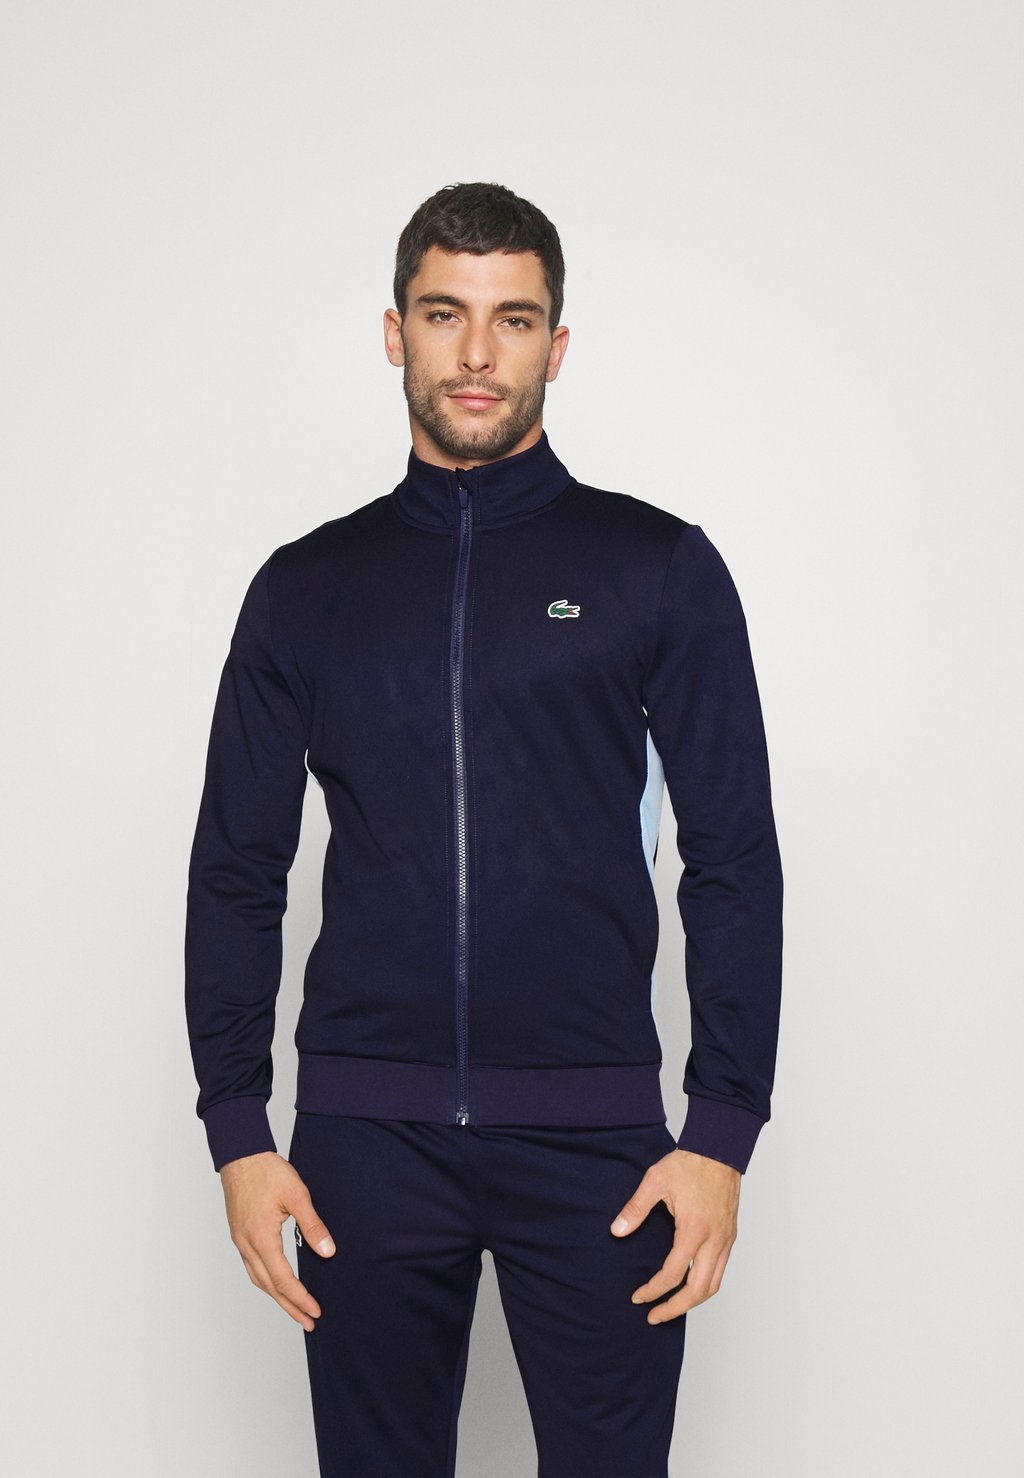 Флисовая куртка Track Jacket Lacoste, цвет navy blue/overview